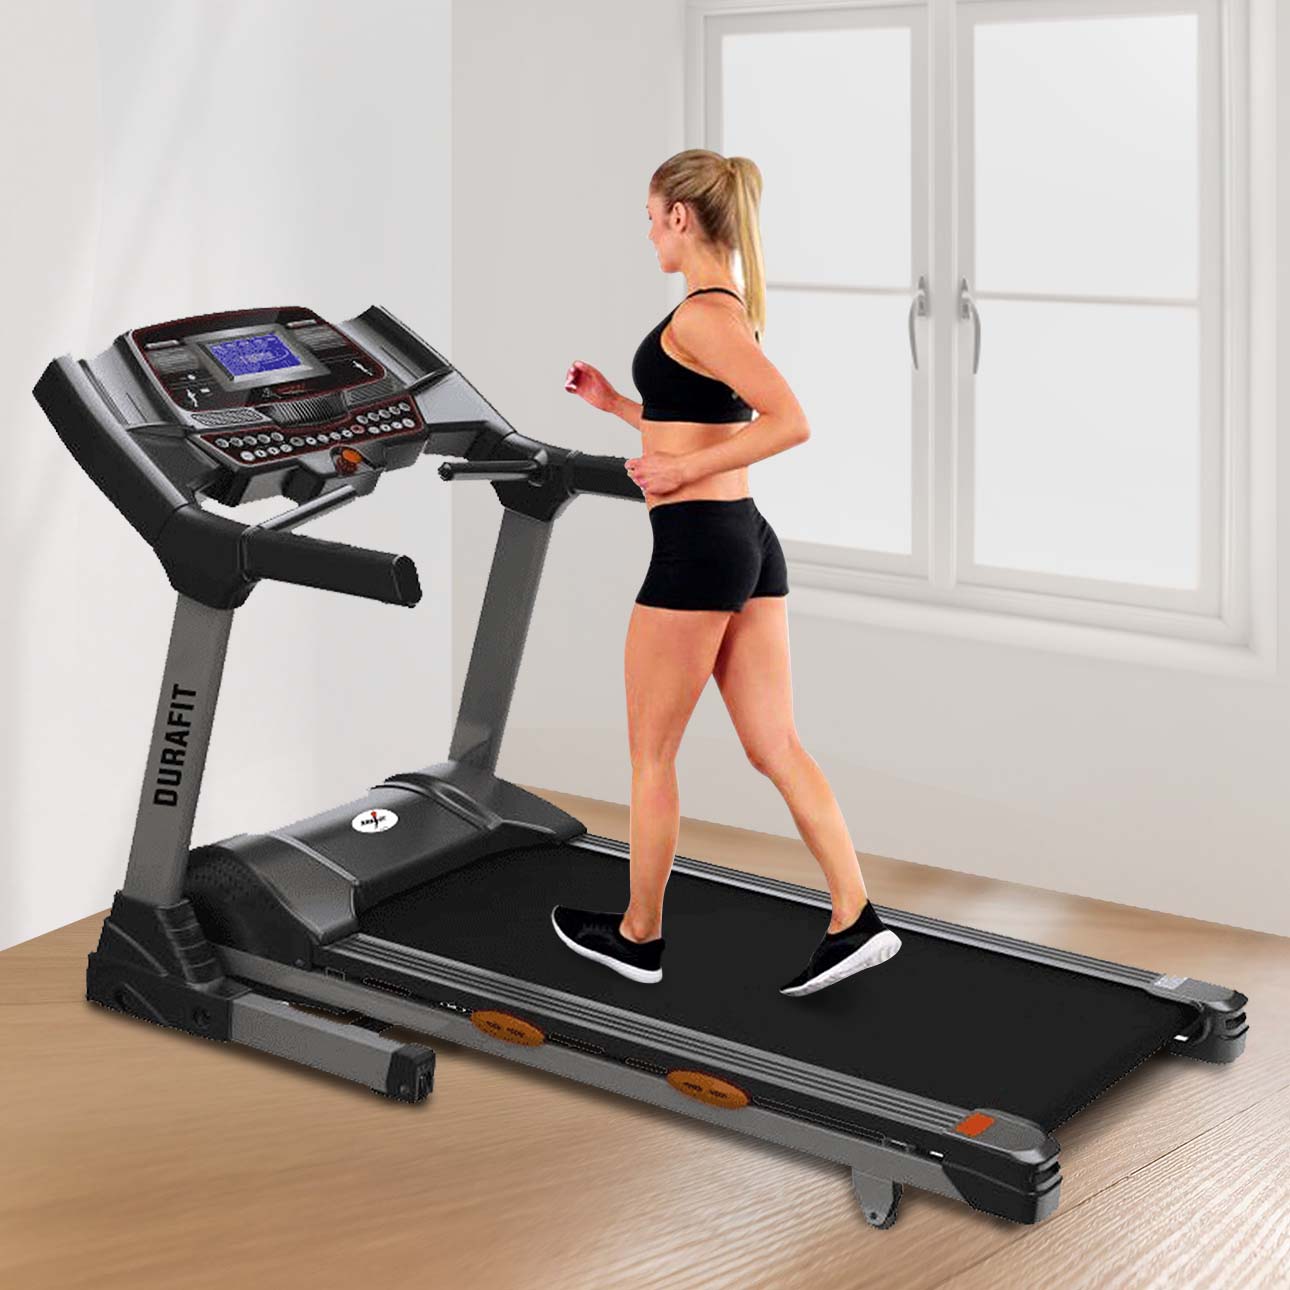 Durafit Rigor treadmill 